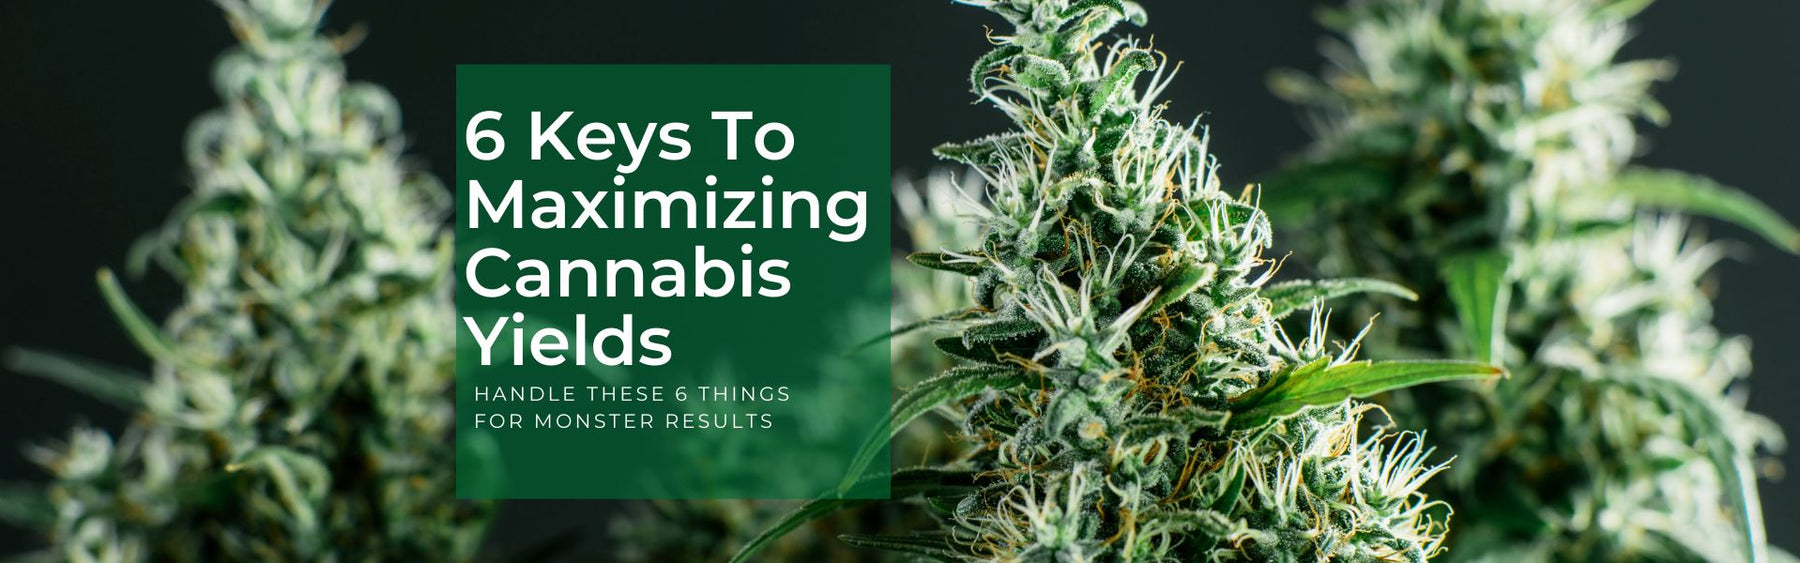 Maximize cannabis yields